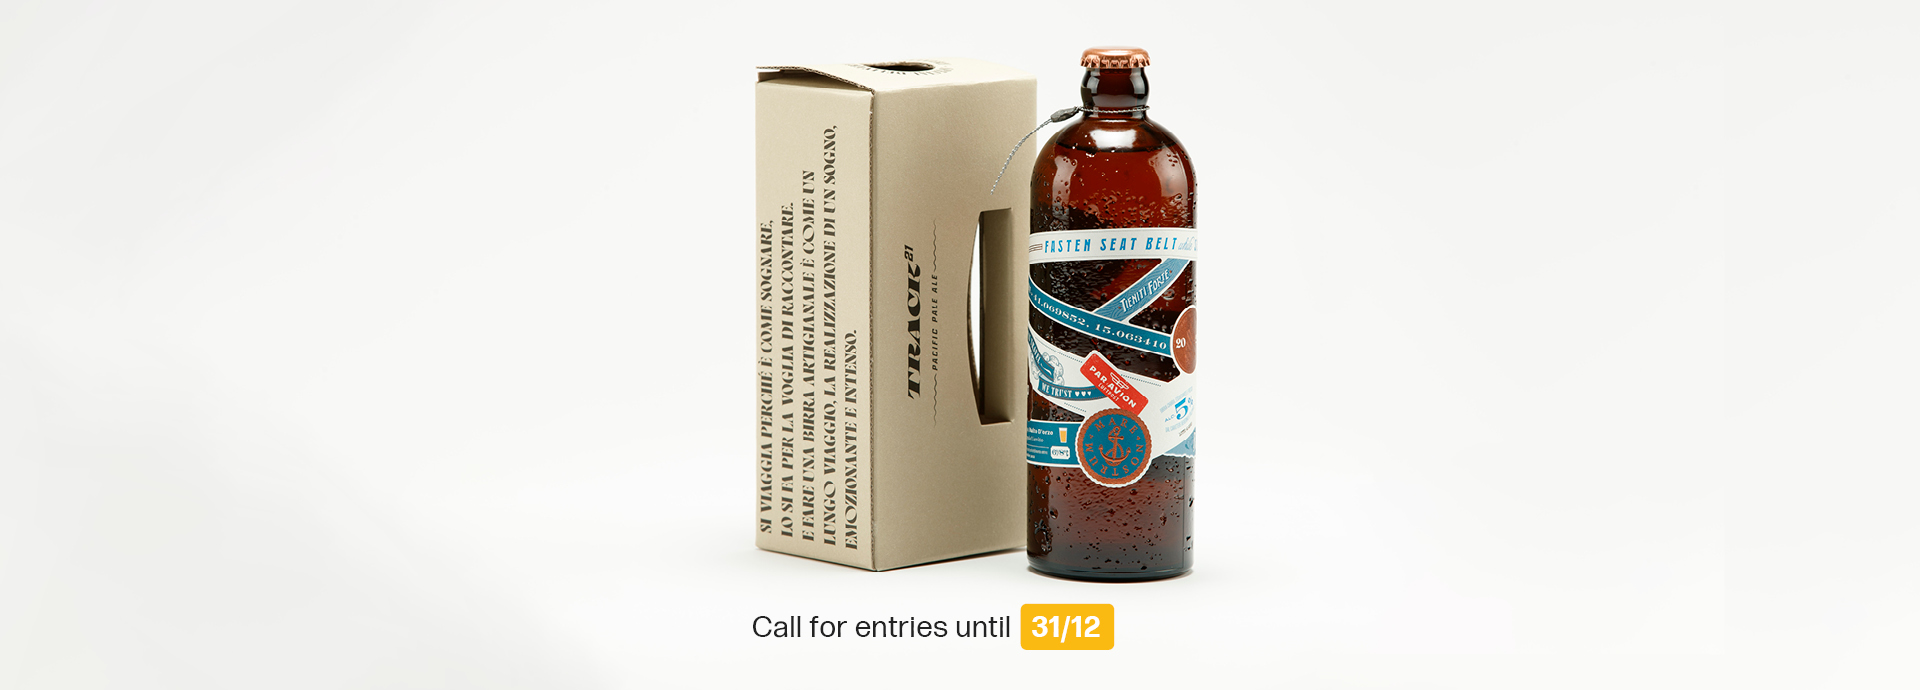 Další ročník Best Beer Label and Pack Award je tady!